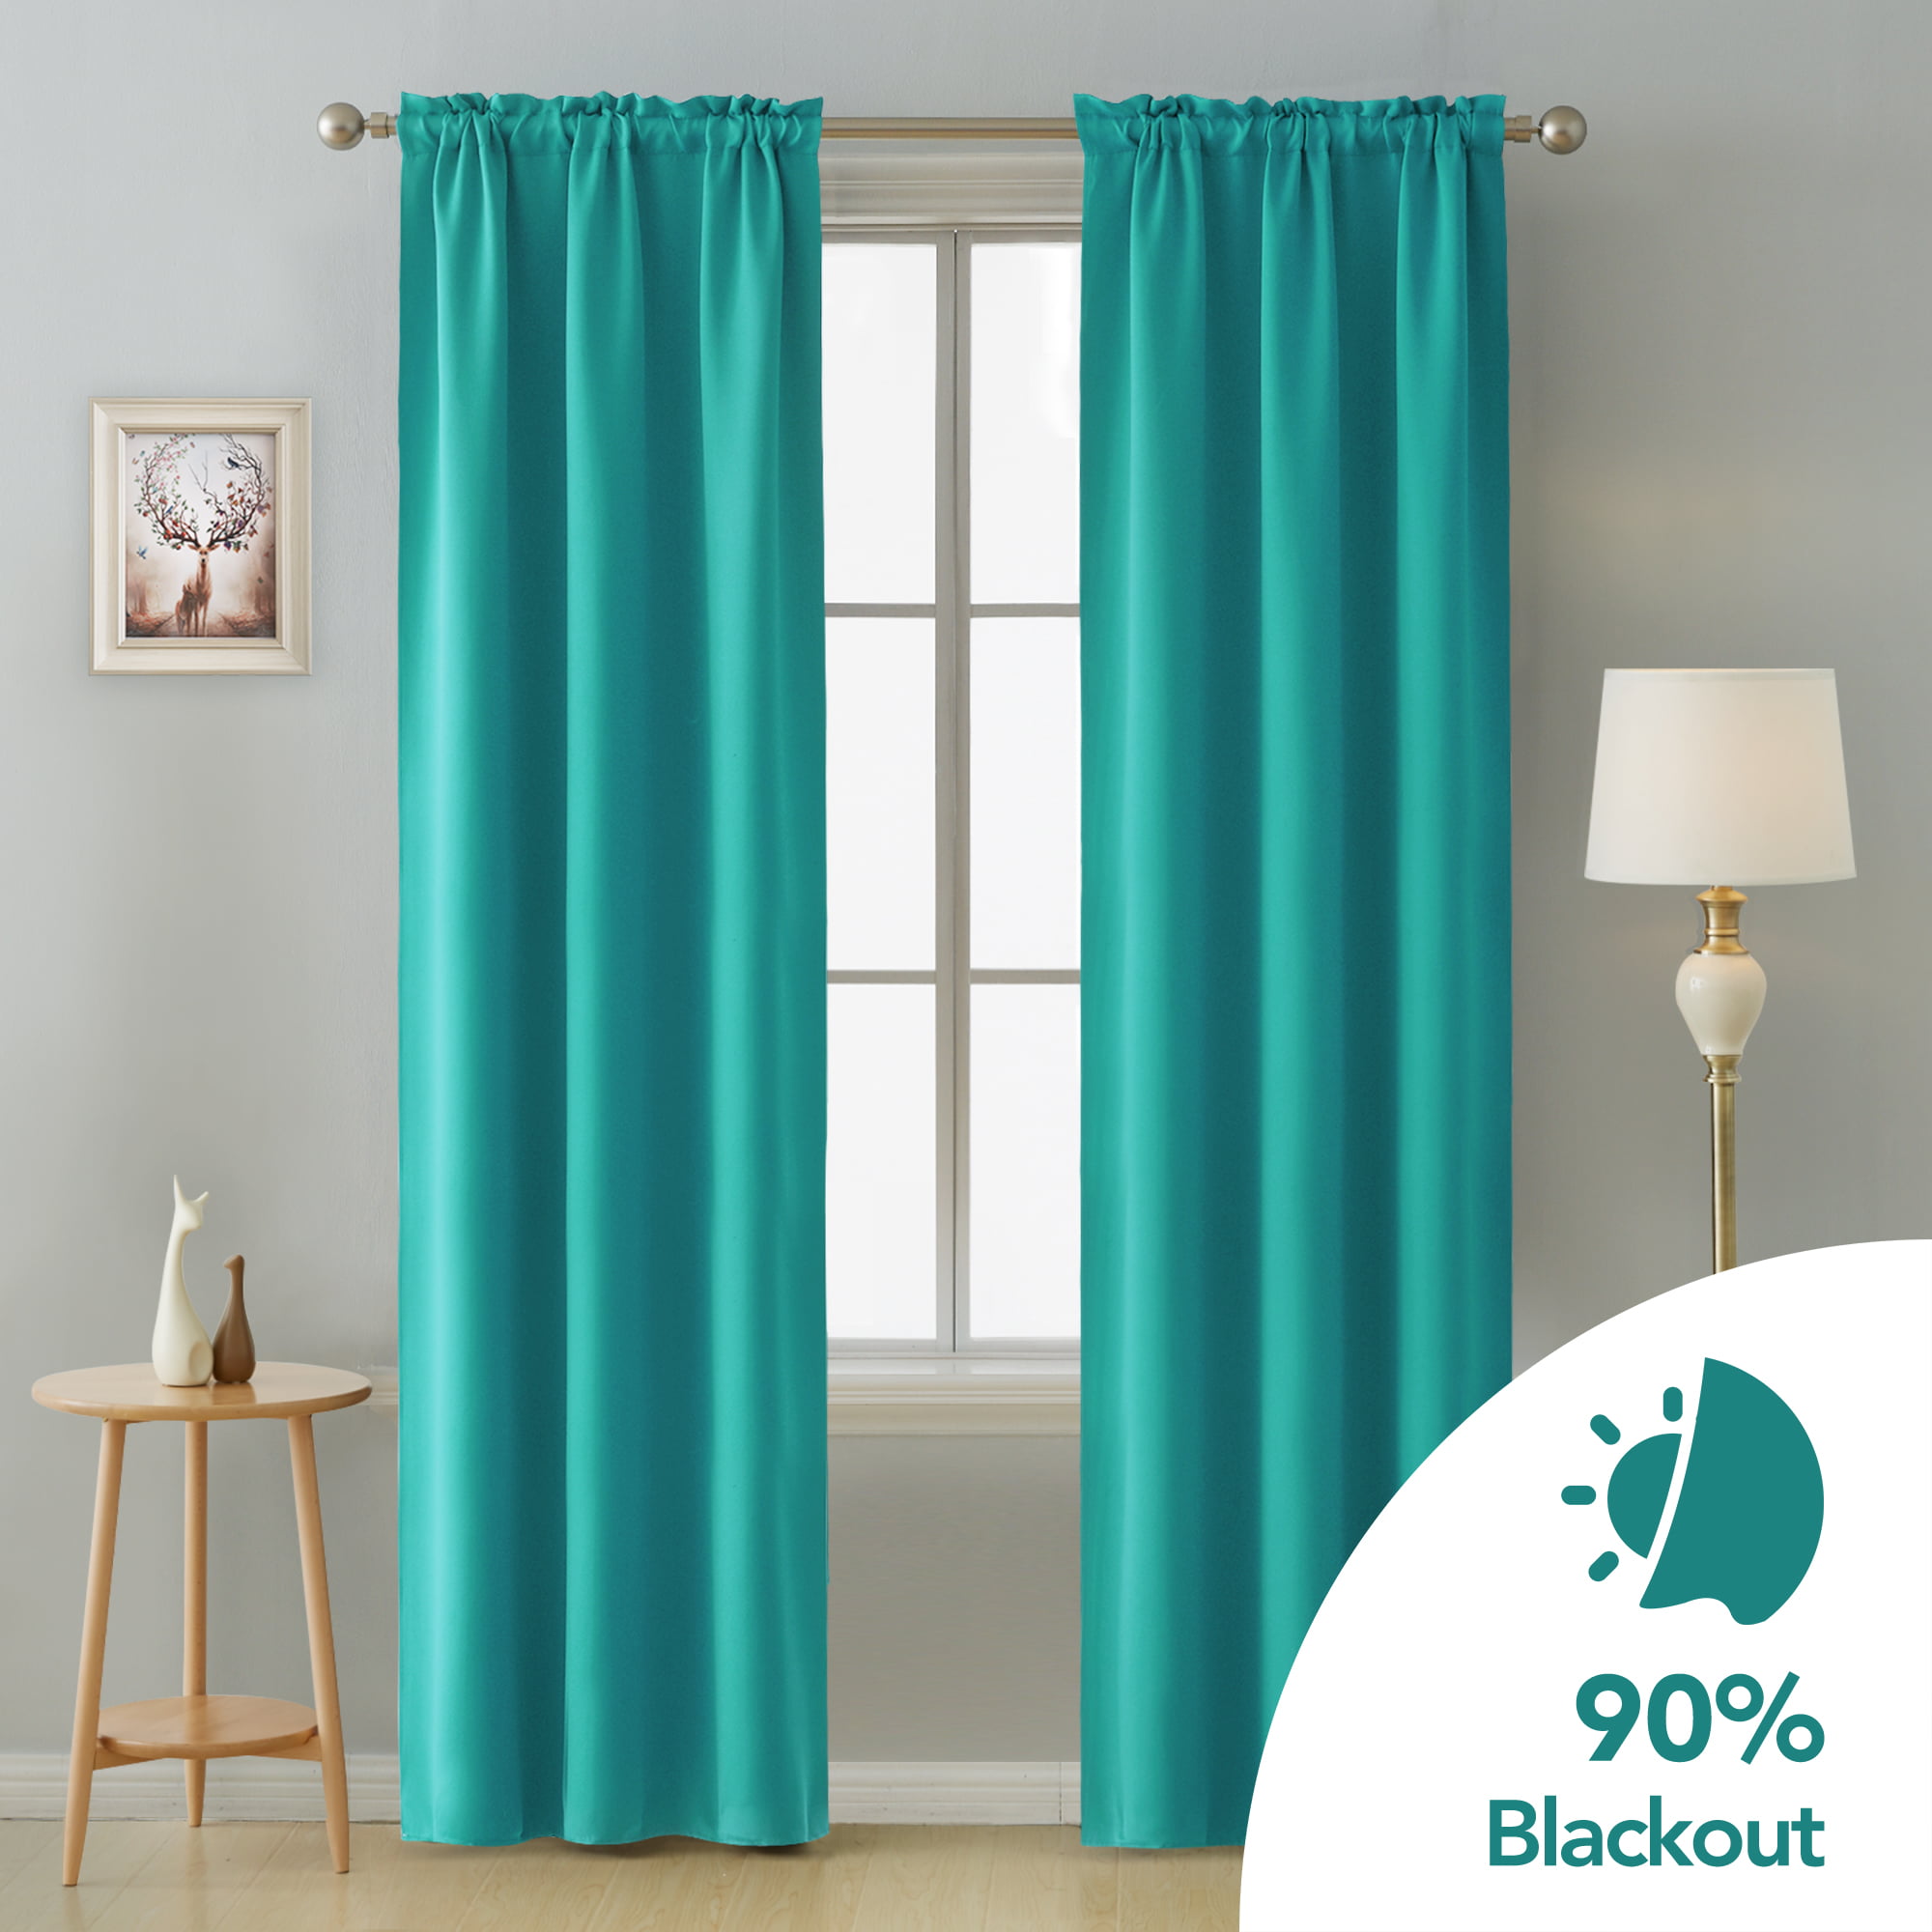 Details about   Pillowfort Aqua Blue Window Blackout Curtain Single Panel 42" x 84” 